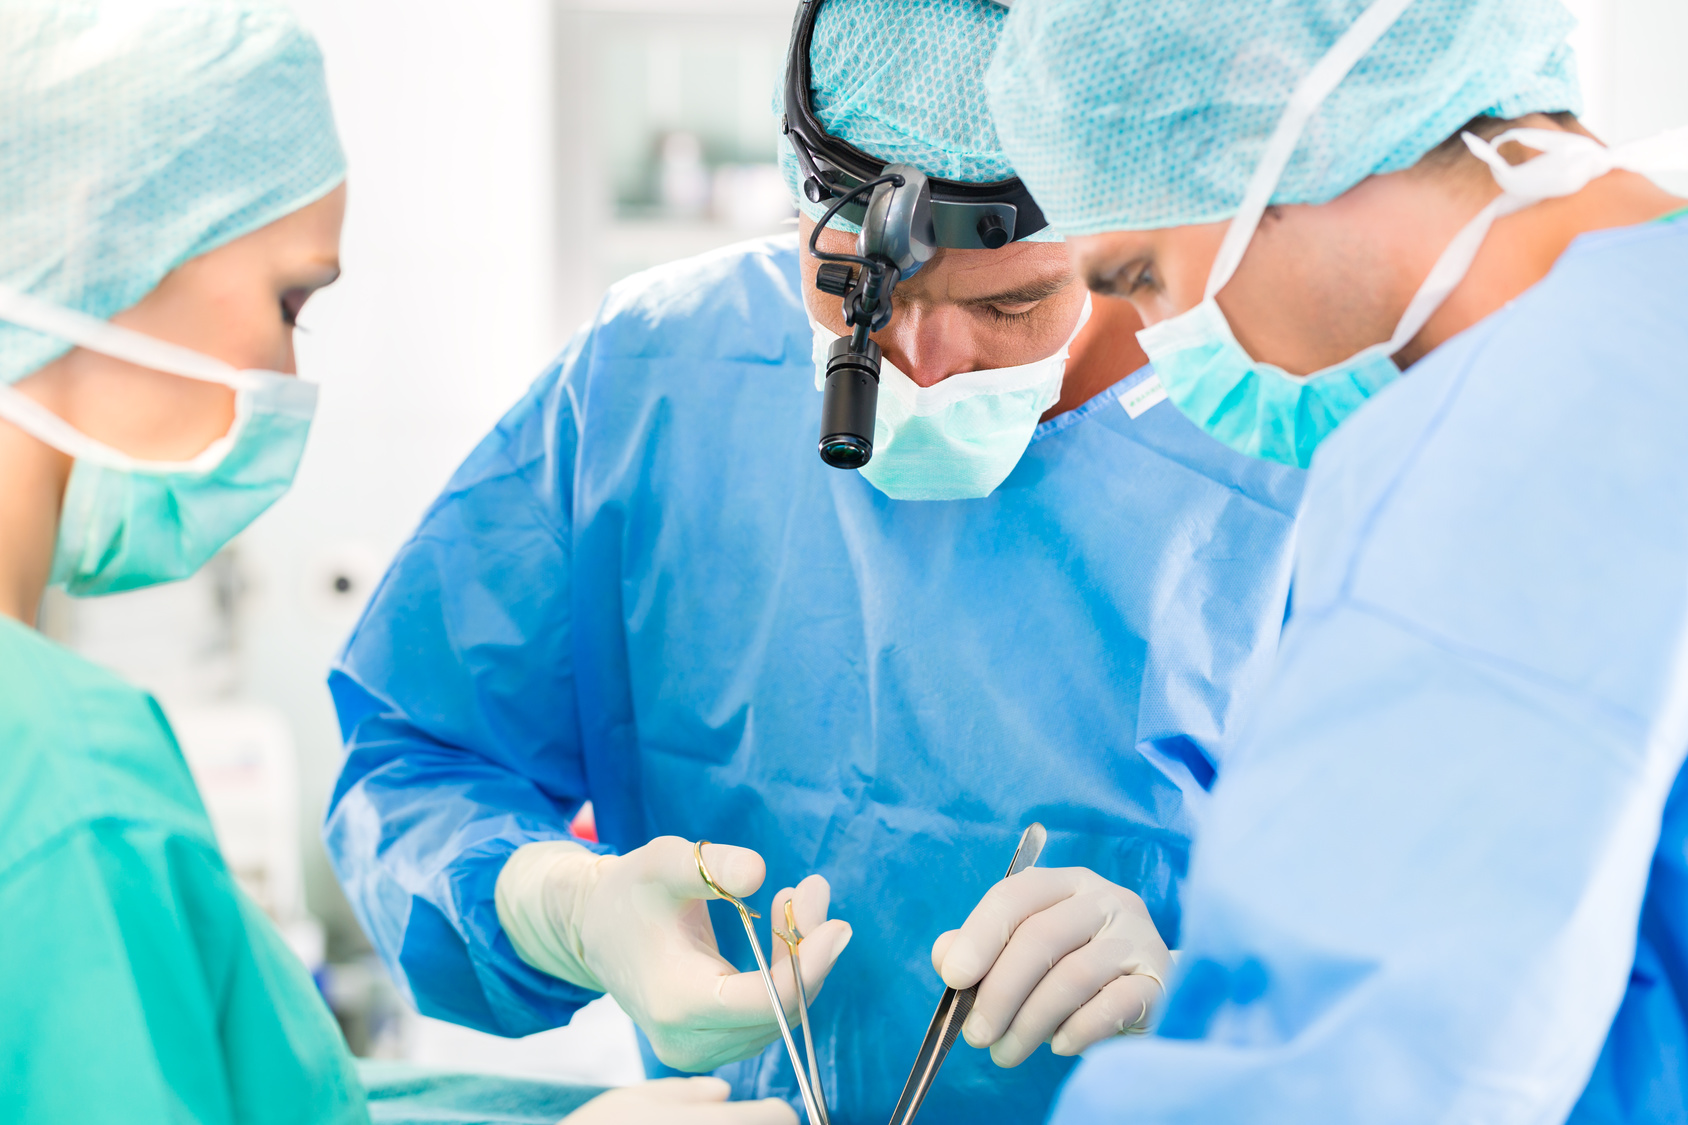 Chirurgie articulaire : Quand est-elle vraiment nécessaire